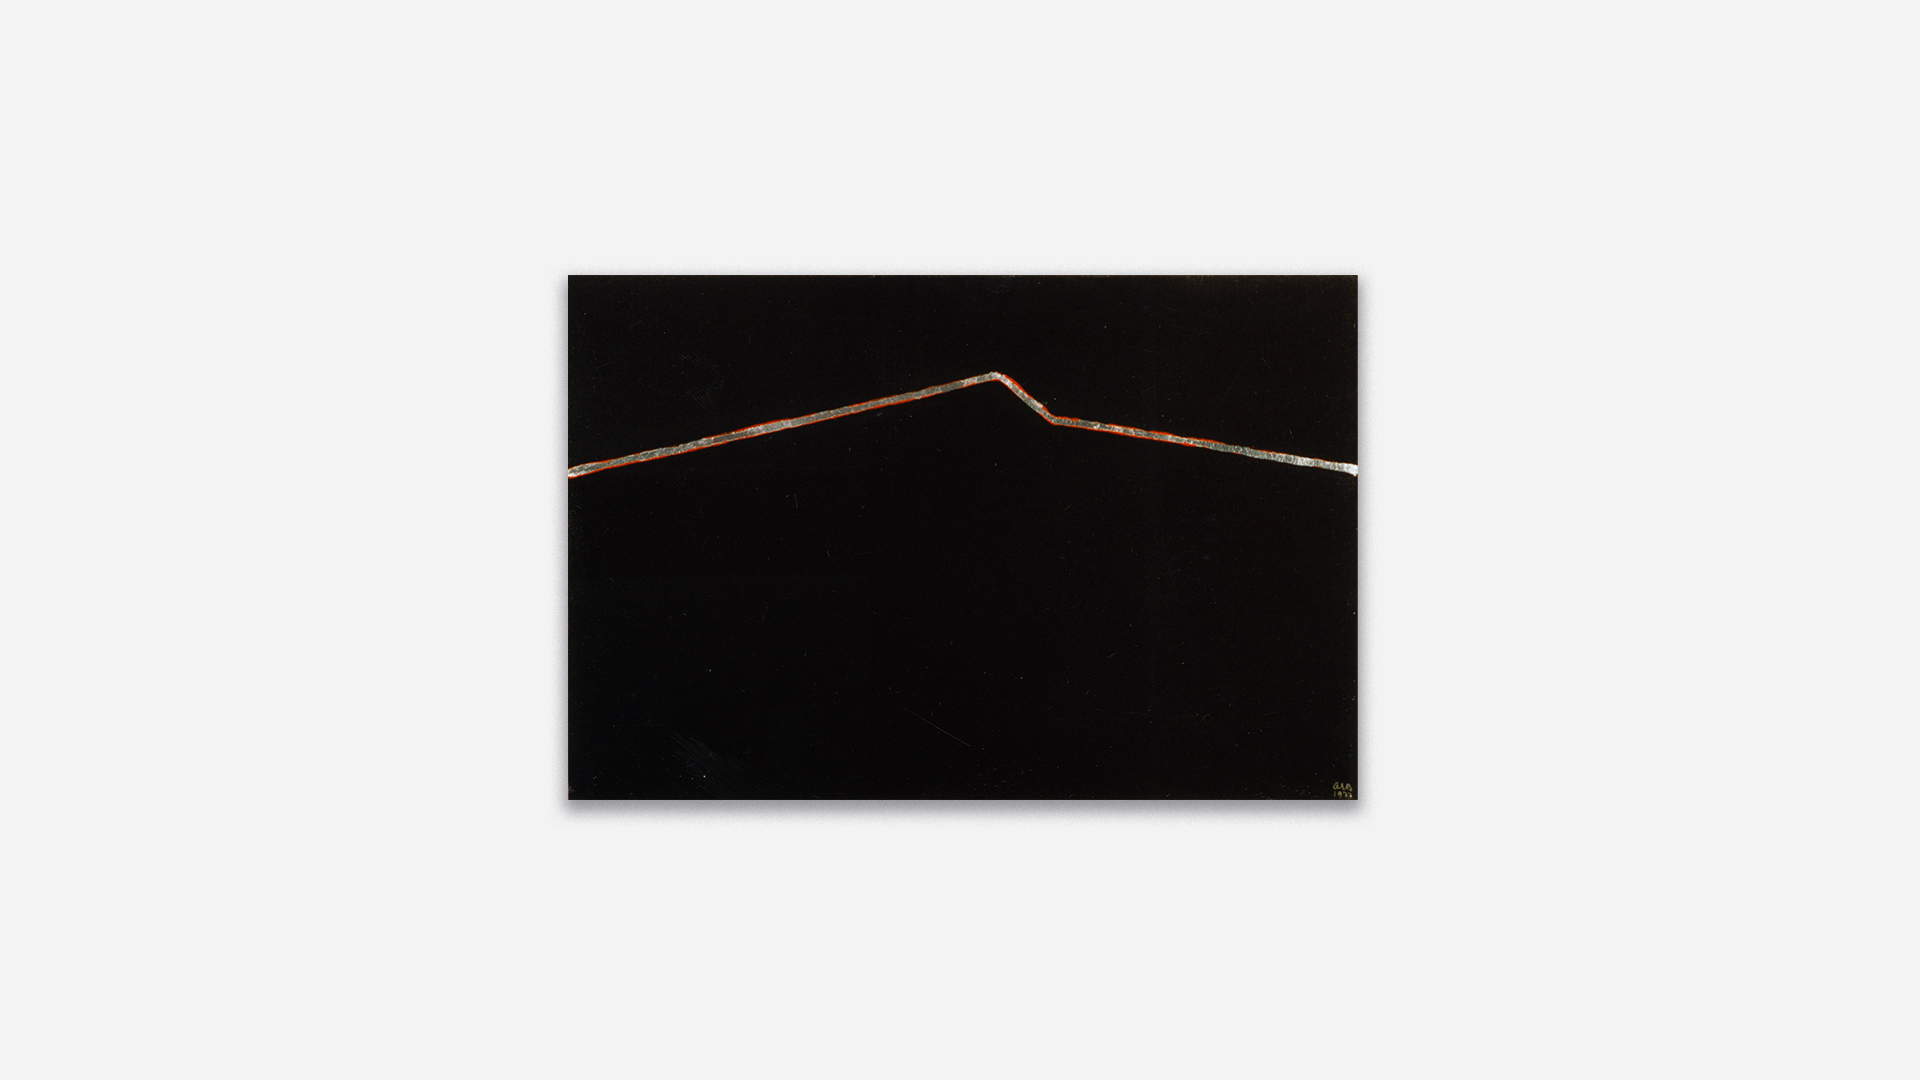 Anna-Eva Bergman, N°16-1977 contour de montagne noire, 1977, Acrylic and metal leaf on canvas, 54 x 81 cm